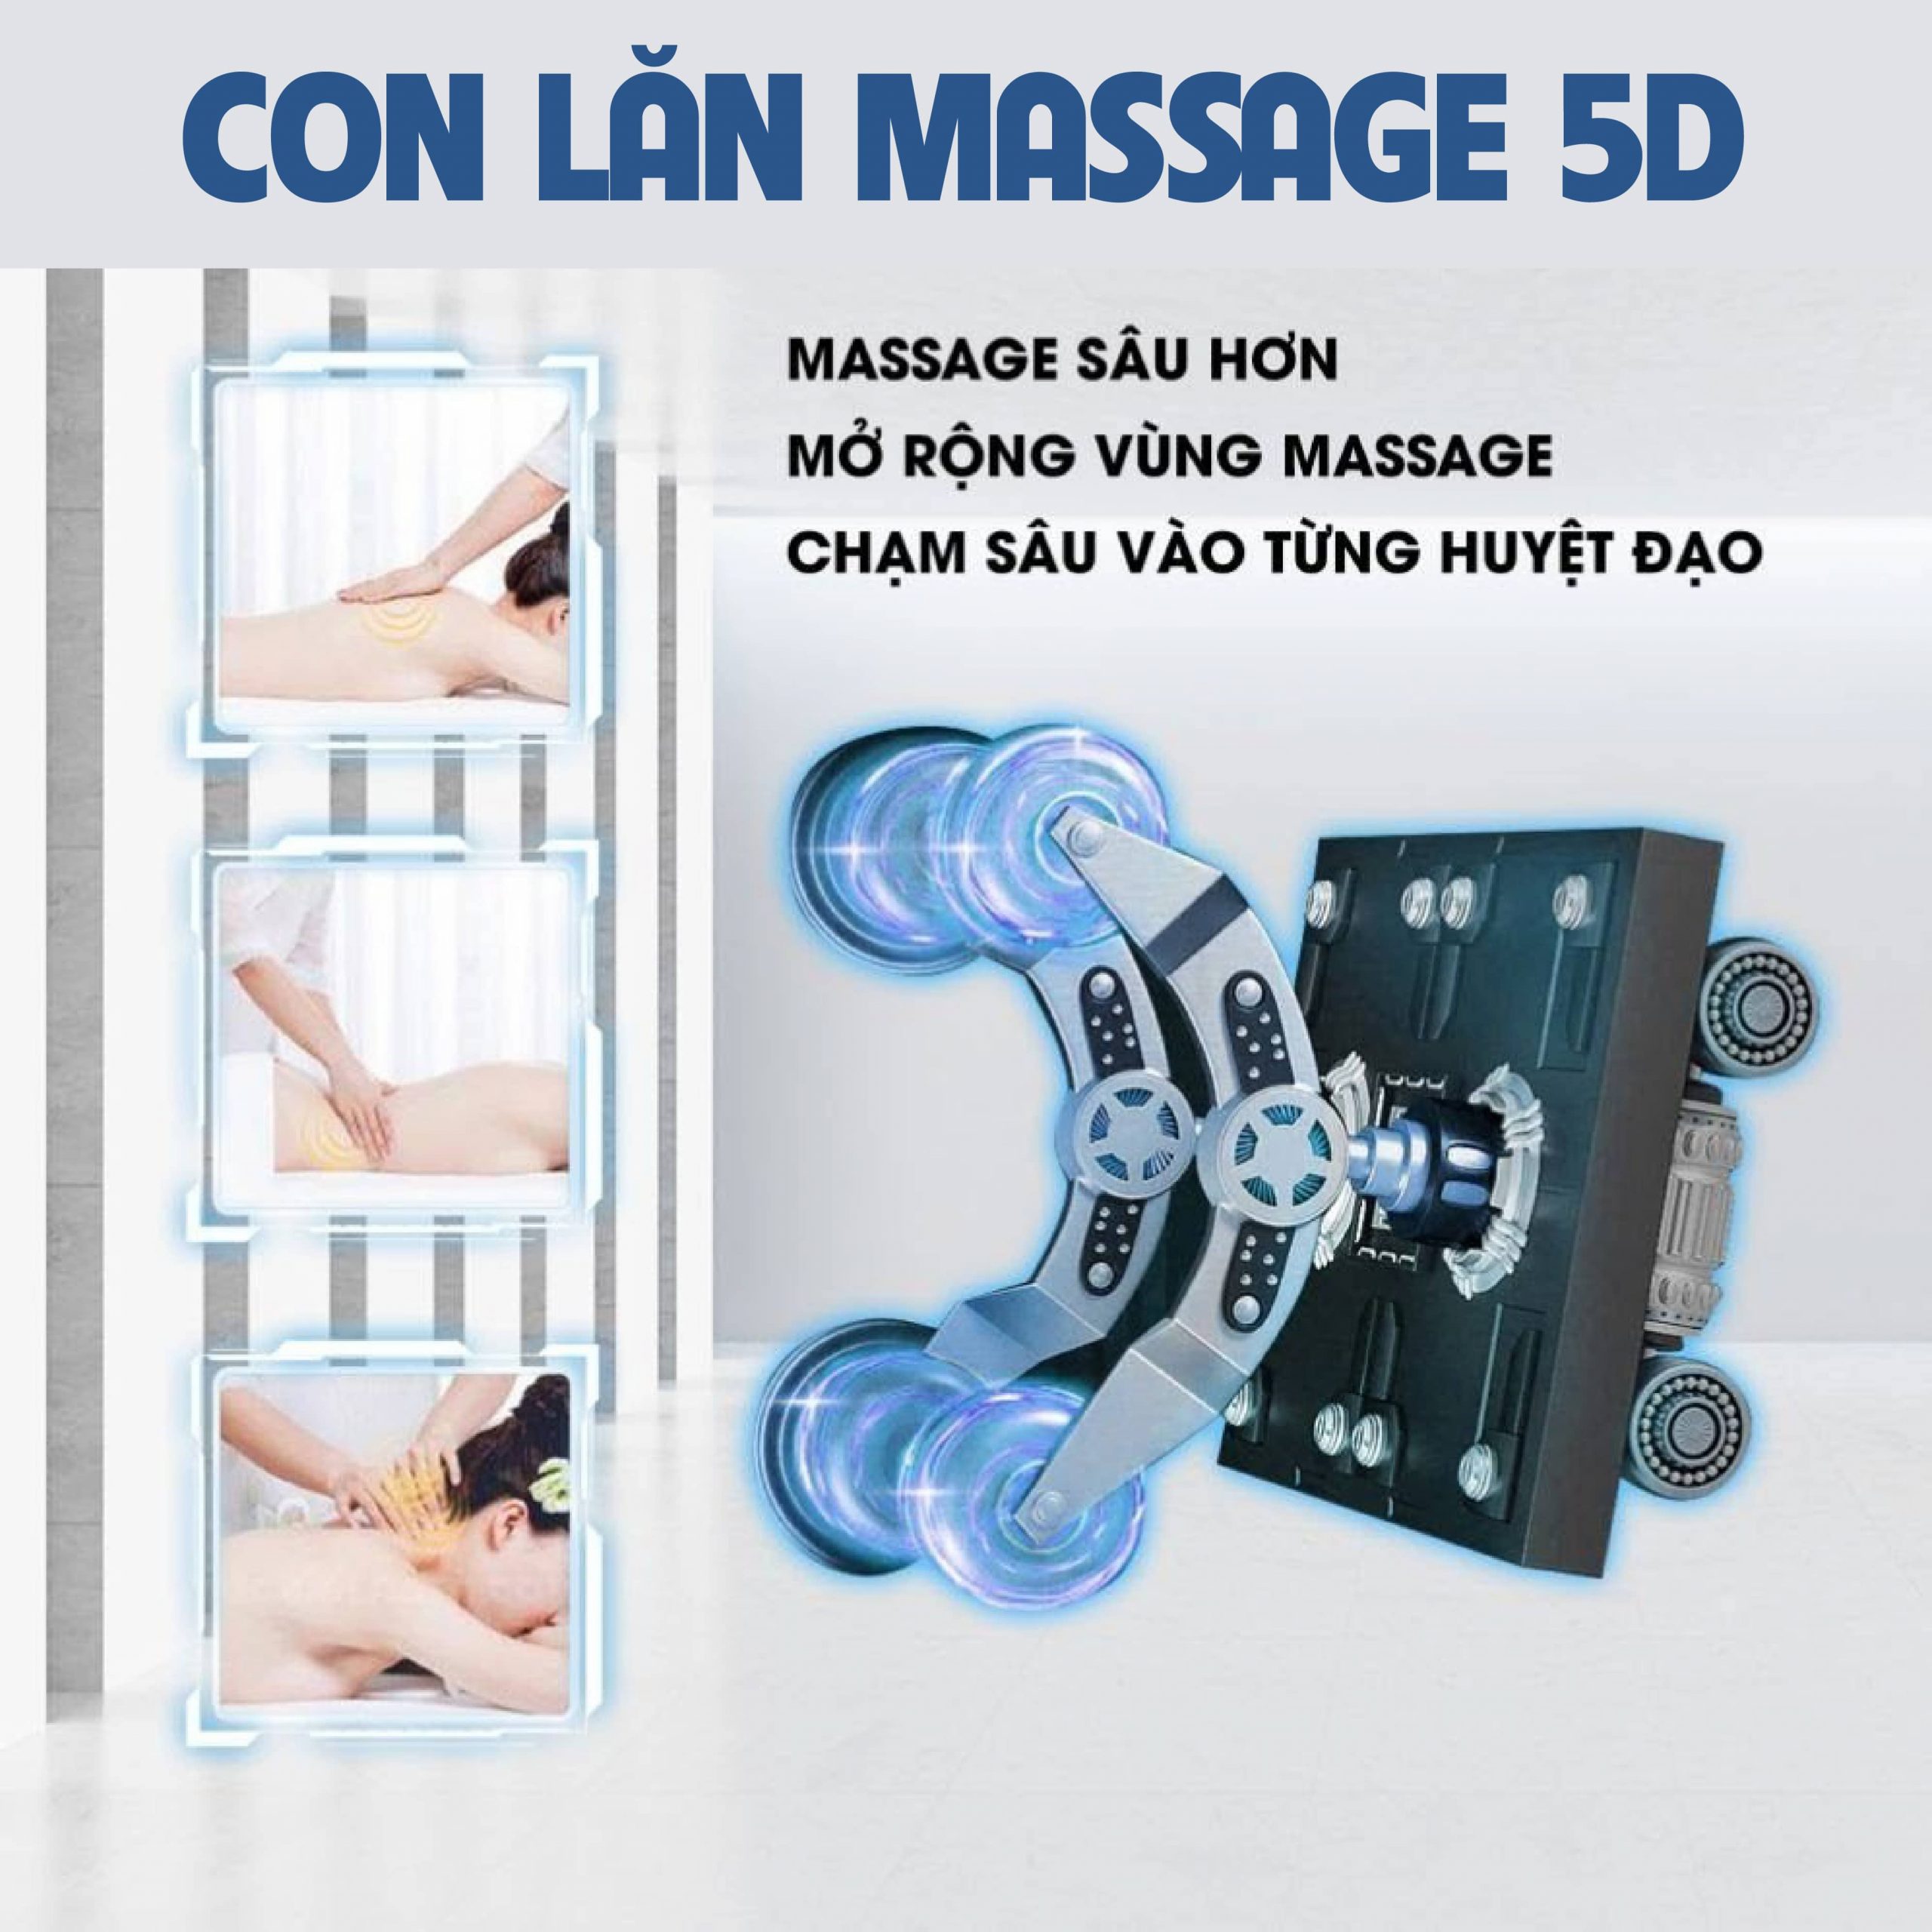 Con lăn massage 5D chuyên sâu với vùng diện tích nhào nặn massage rộng hơn tập trung vào từng huyệt đạo